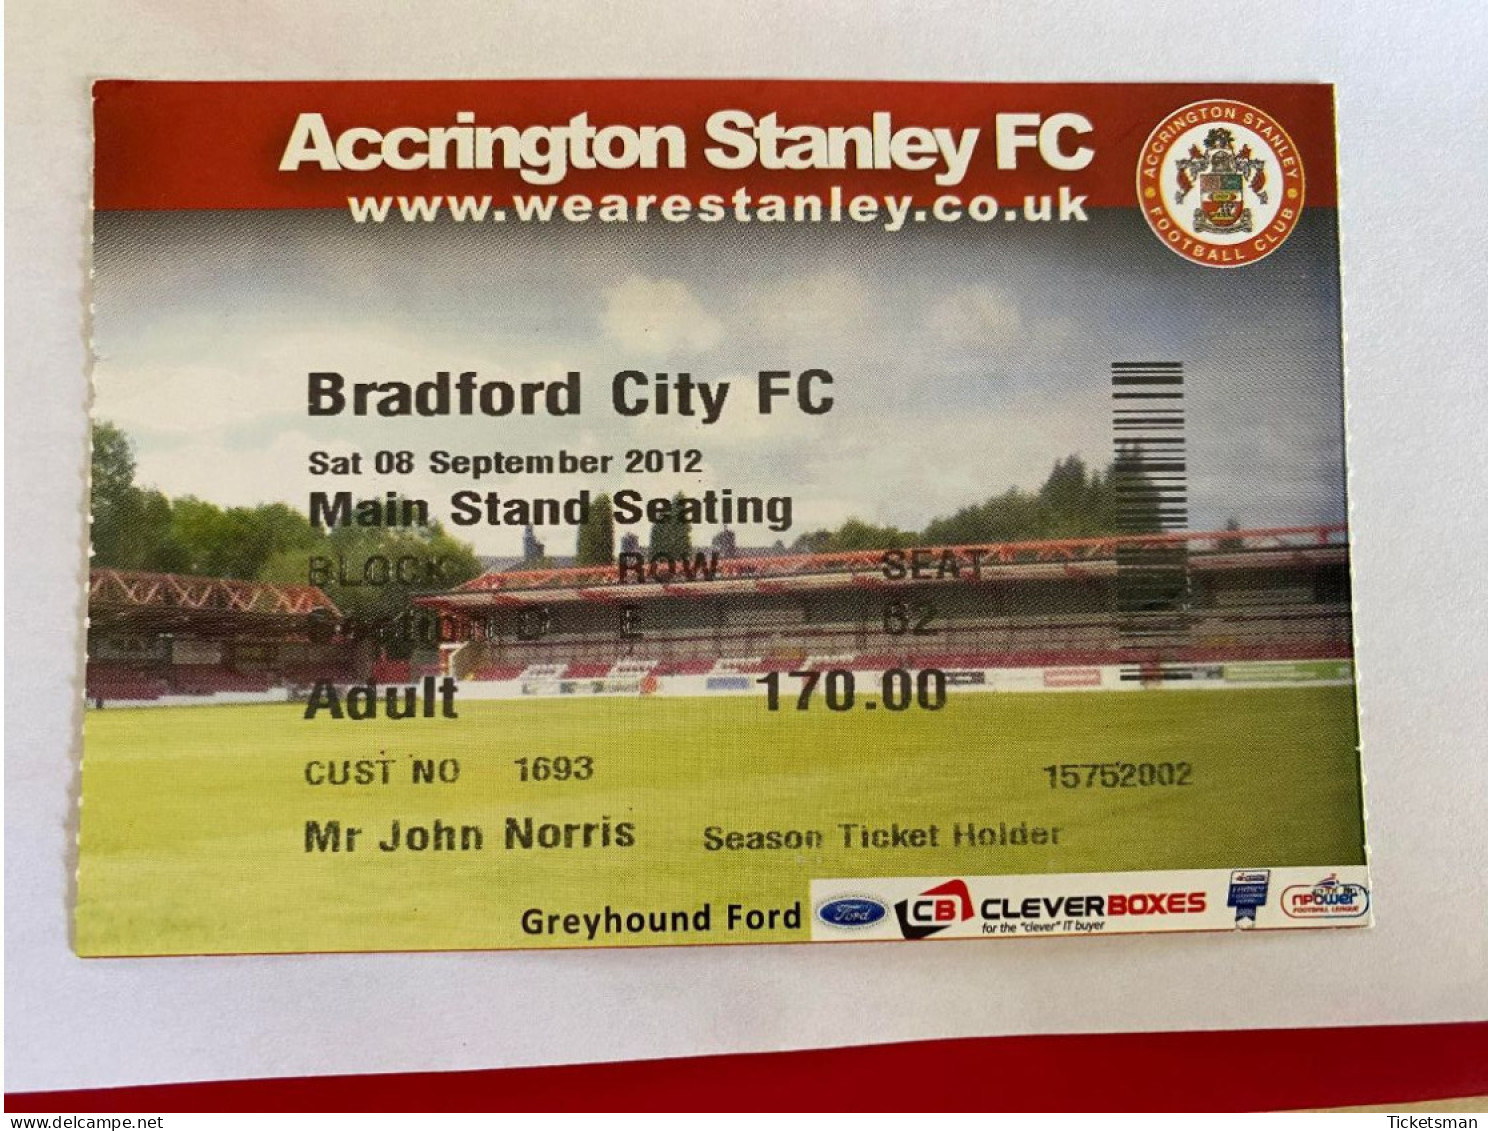 Football Ticket Billet Jegy Biglietto Eintrittskarte Accrington Stanley FC - Bradford City FC 08/09/2012 - Tickets - Vouchers